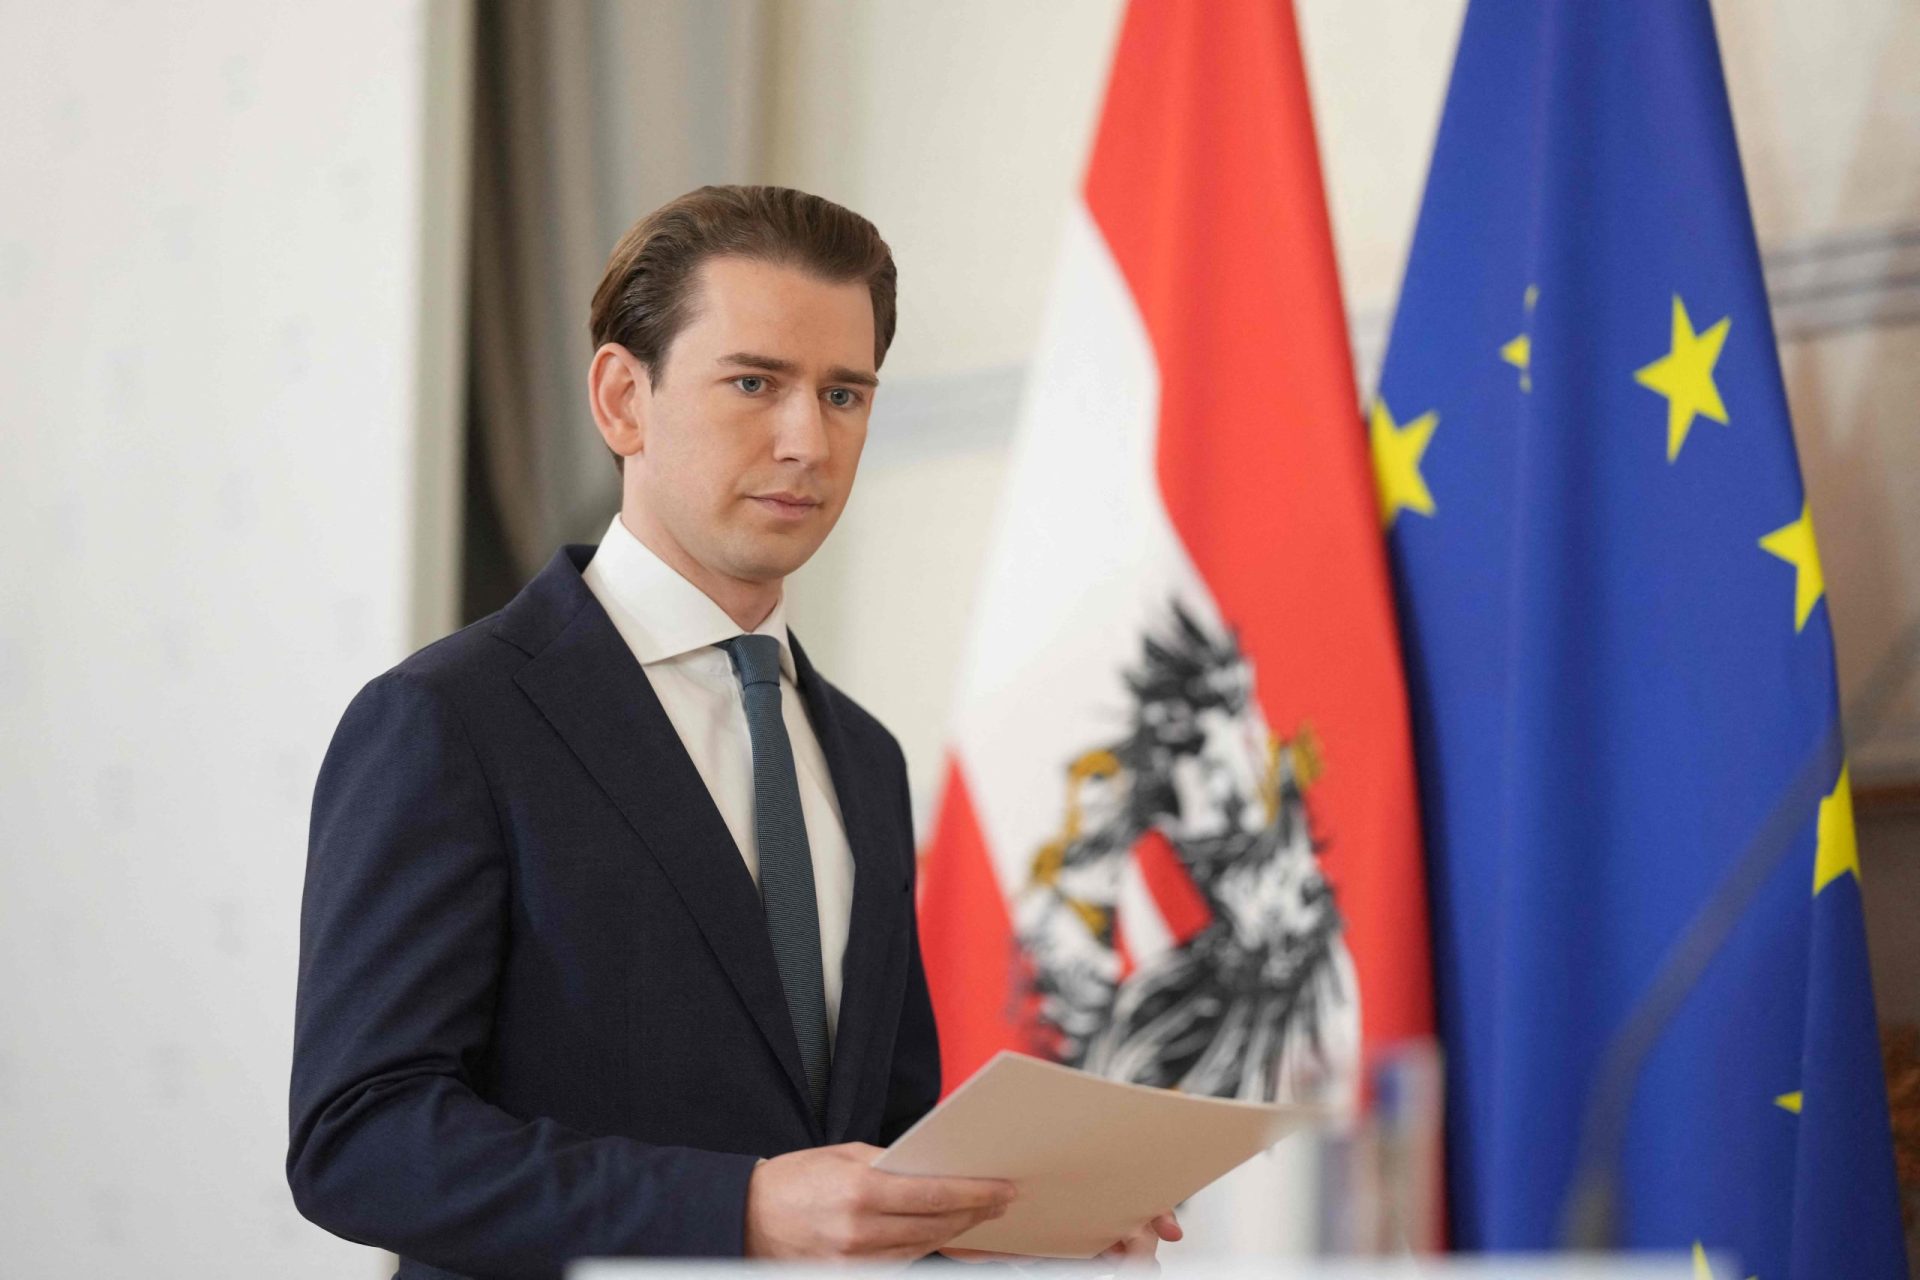 Após suspeitas de corrupção, chanceler austríaco demite-se